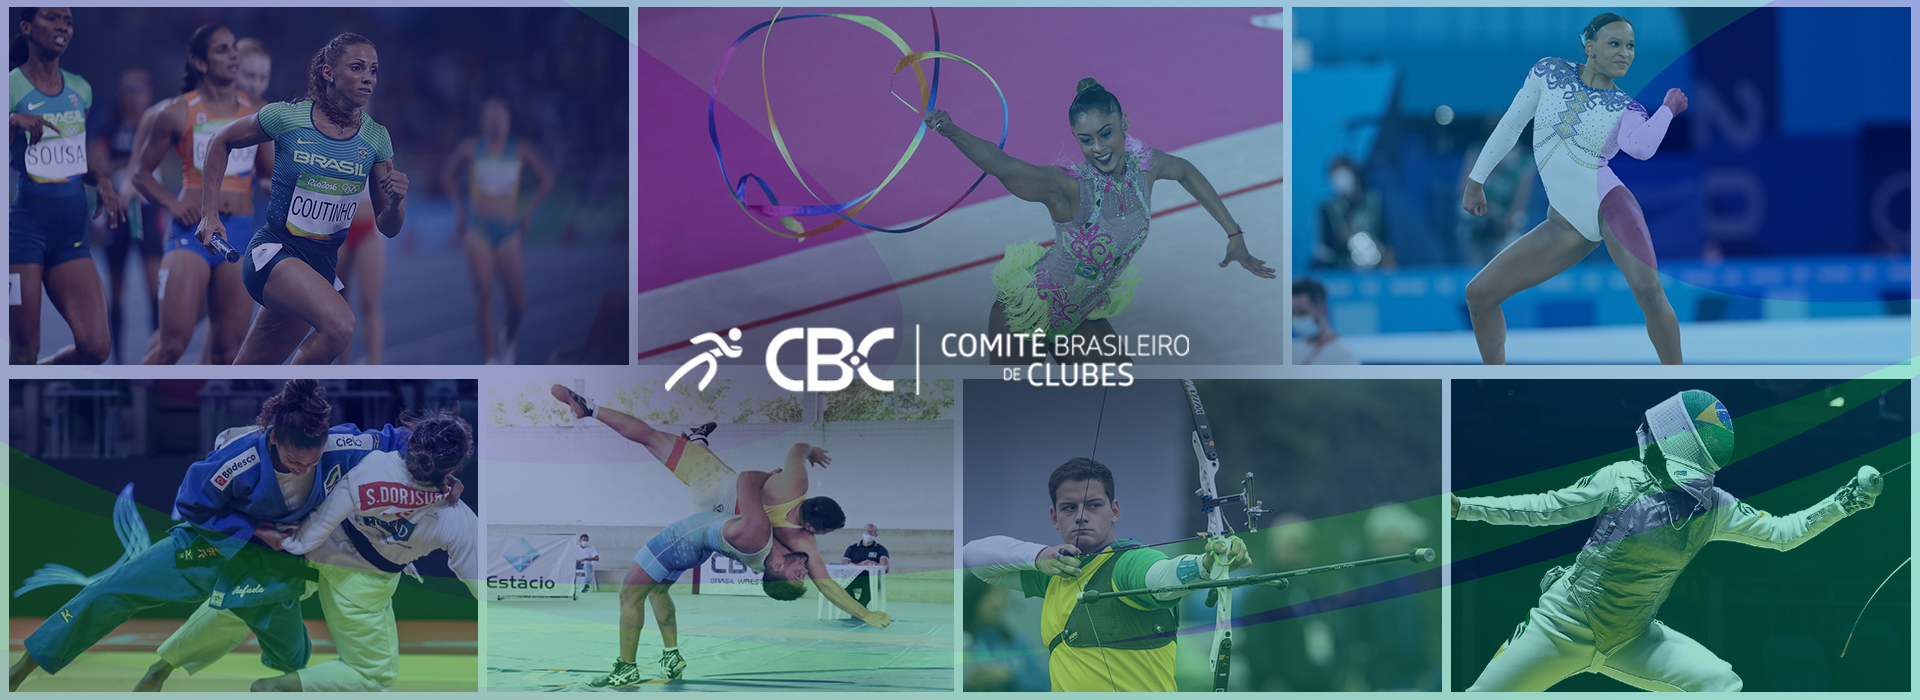 Brasil conquista medalhas em diversas modalidades esportivas ao redor do mundo